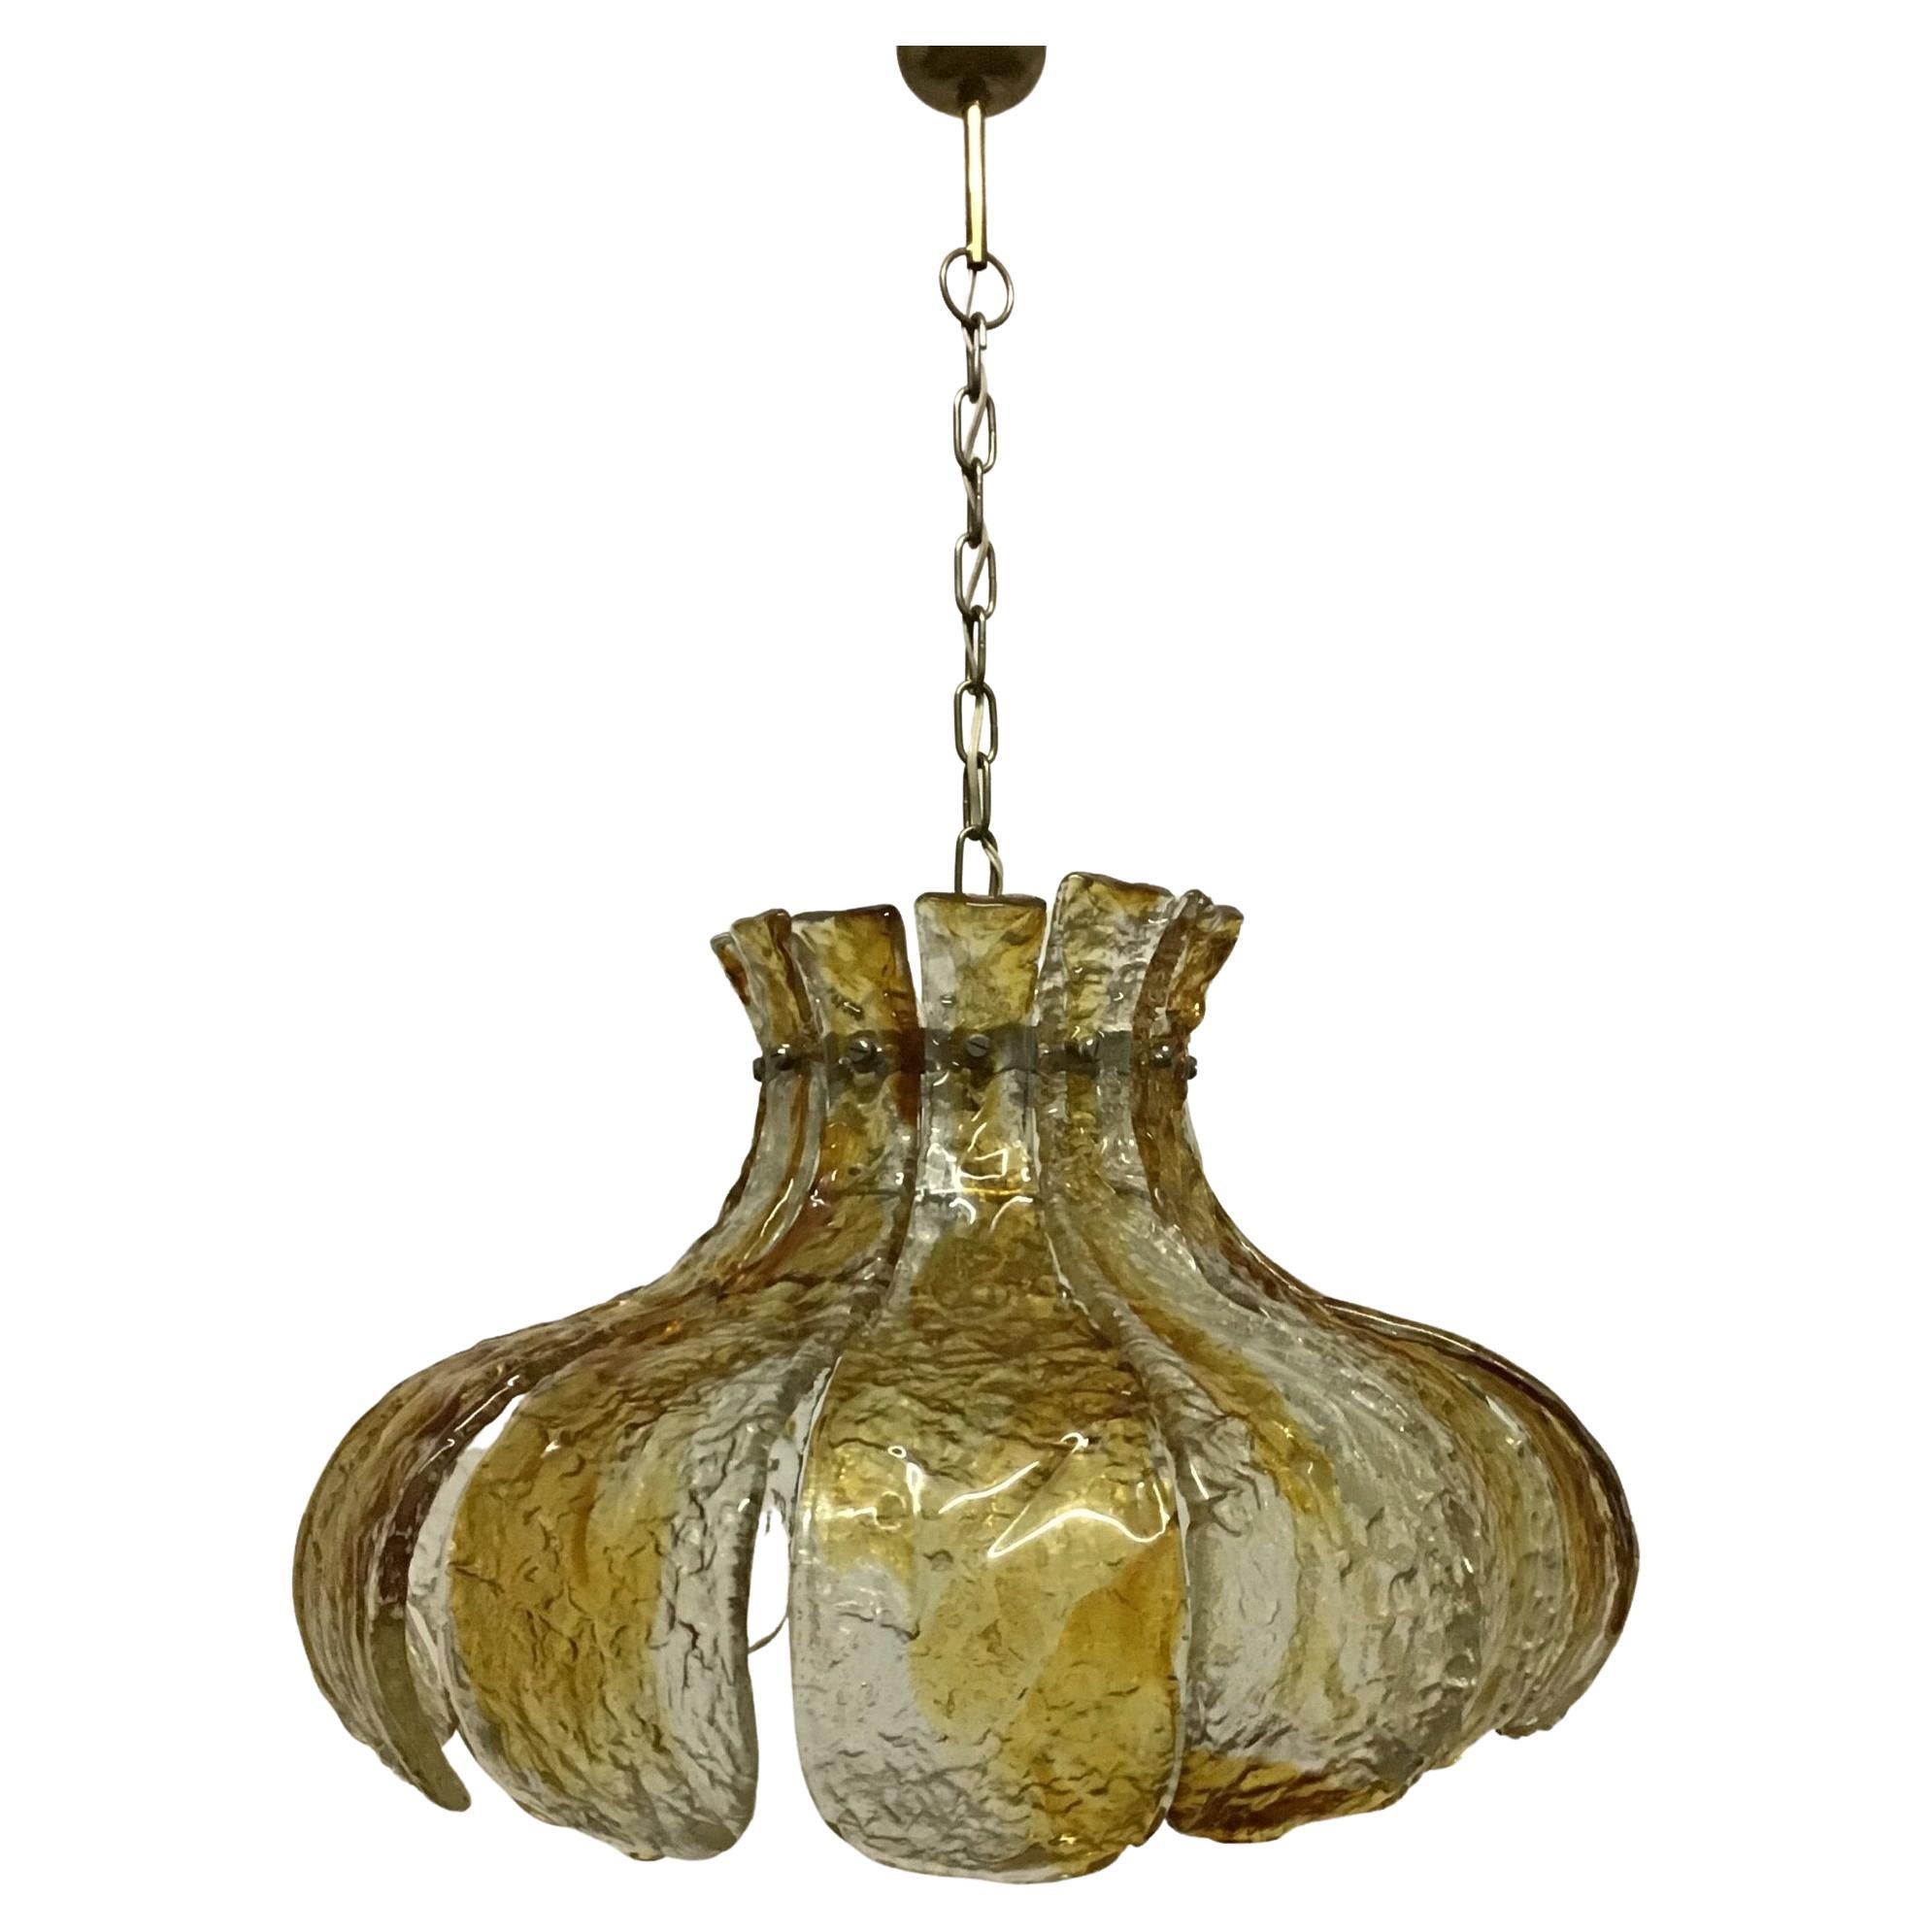 Un grand lustre en verre ambré de Murano dans le style de la fleur calice composé de douze éléments en verre épais structuré et de laiton par Mazzega, Italie, vers les années 1960.
Douille : 1  x Edison E27 ou E26 (US) pour ampoule à vis